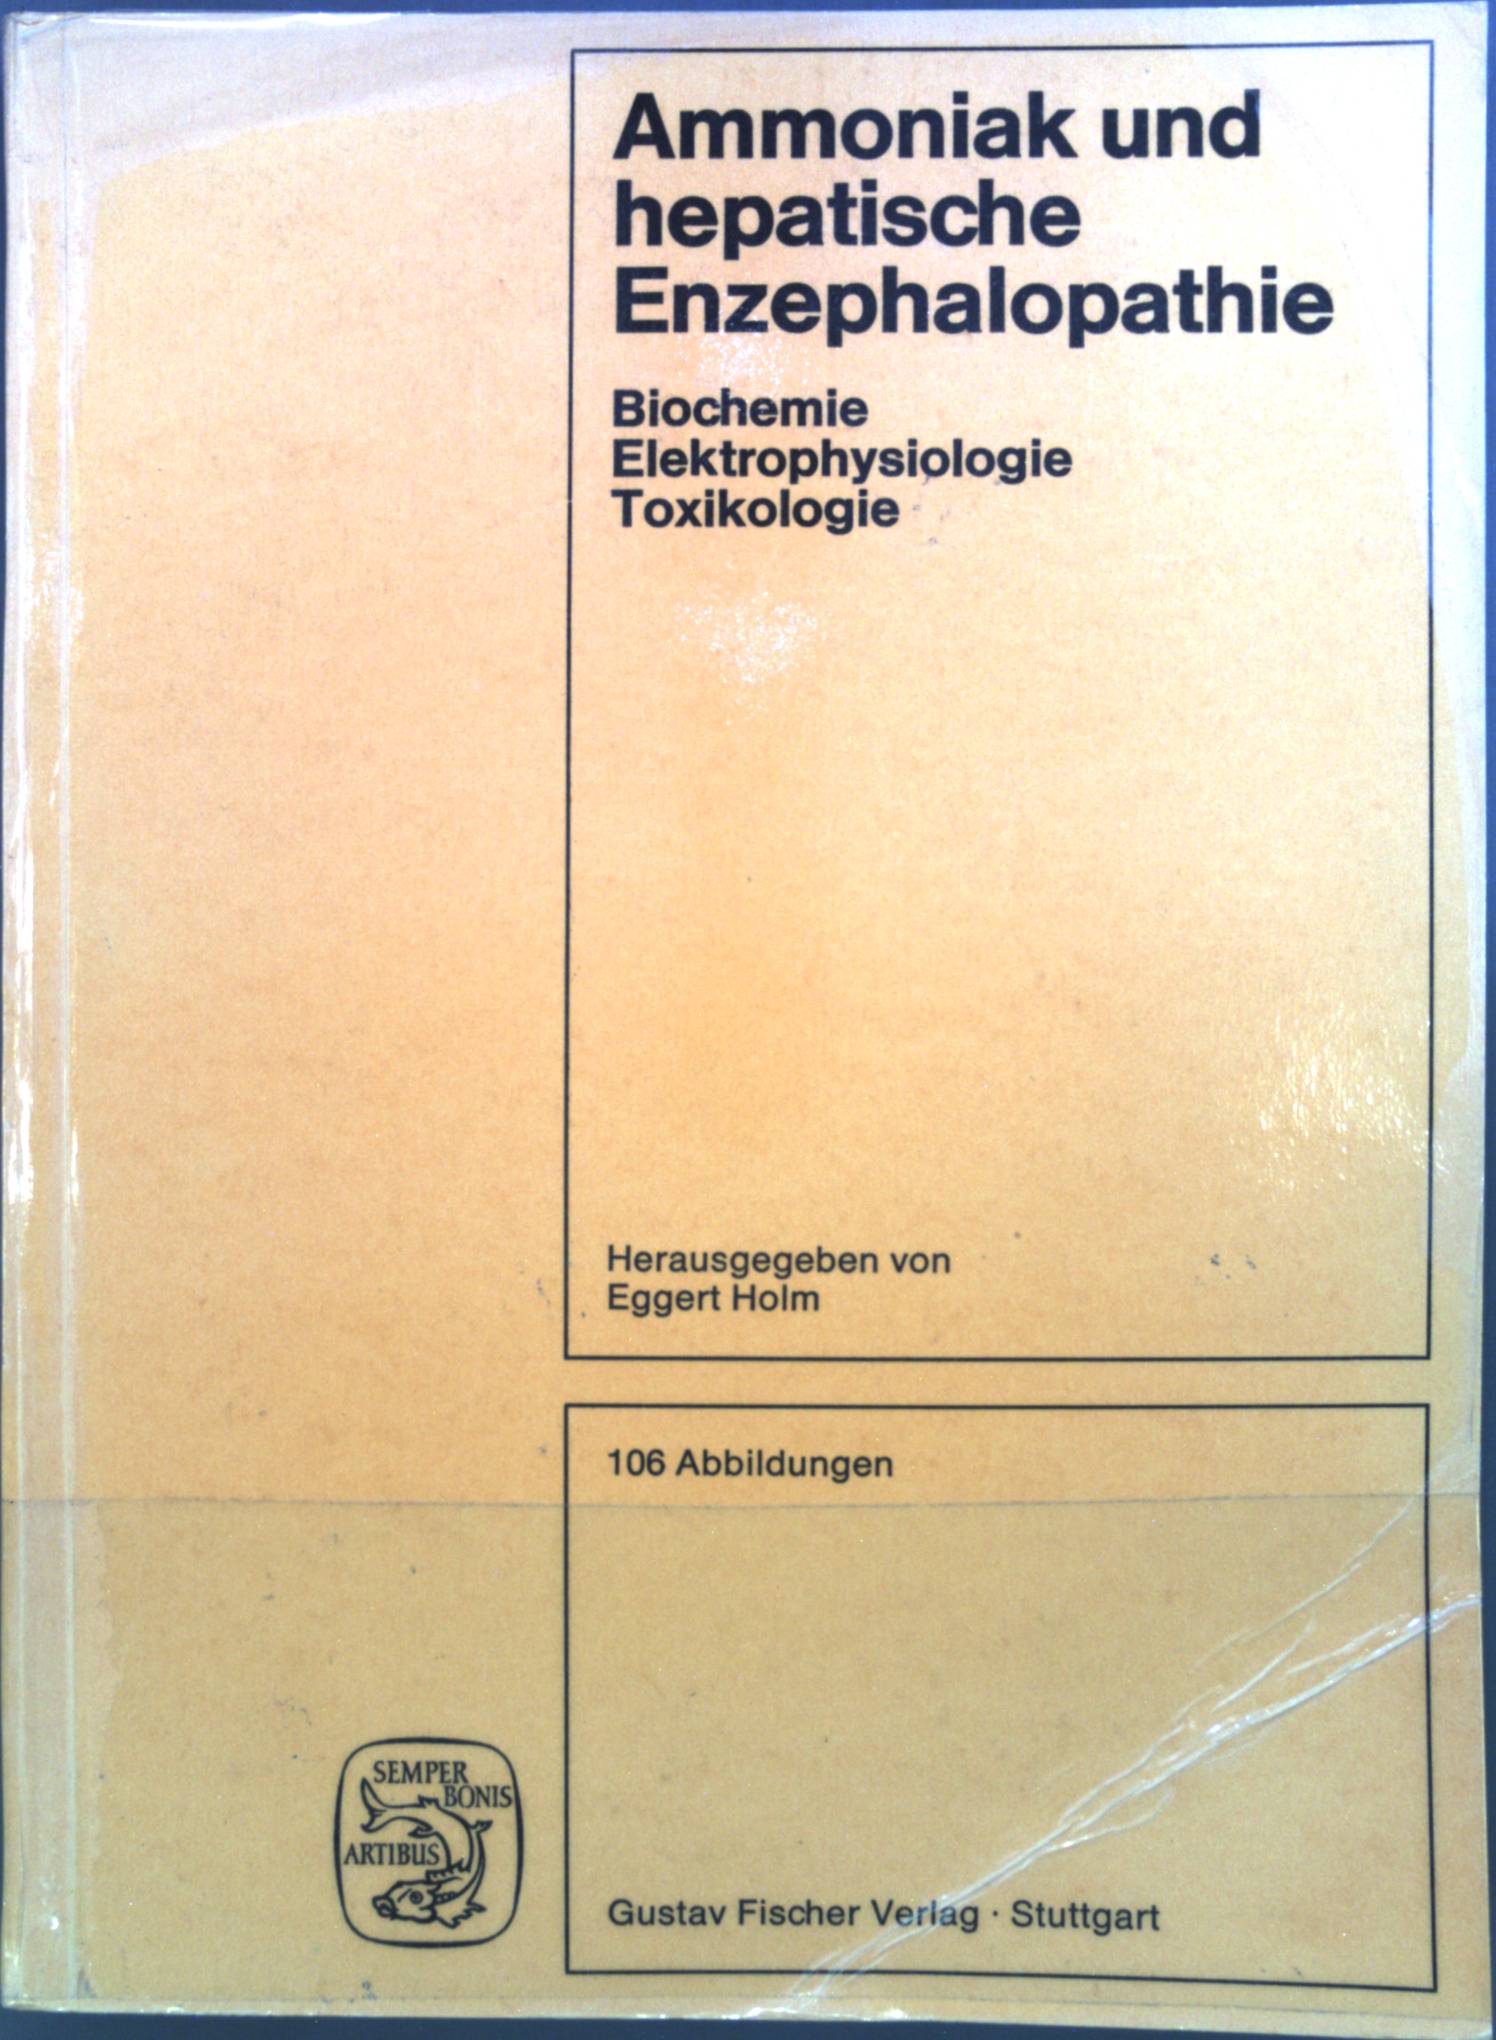 Ammoniak und hepatische Enzephalopathie : Biochemie, ELEKTROPHYSIOLOGIE Toxikologie. - Holm, Eggert